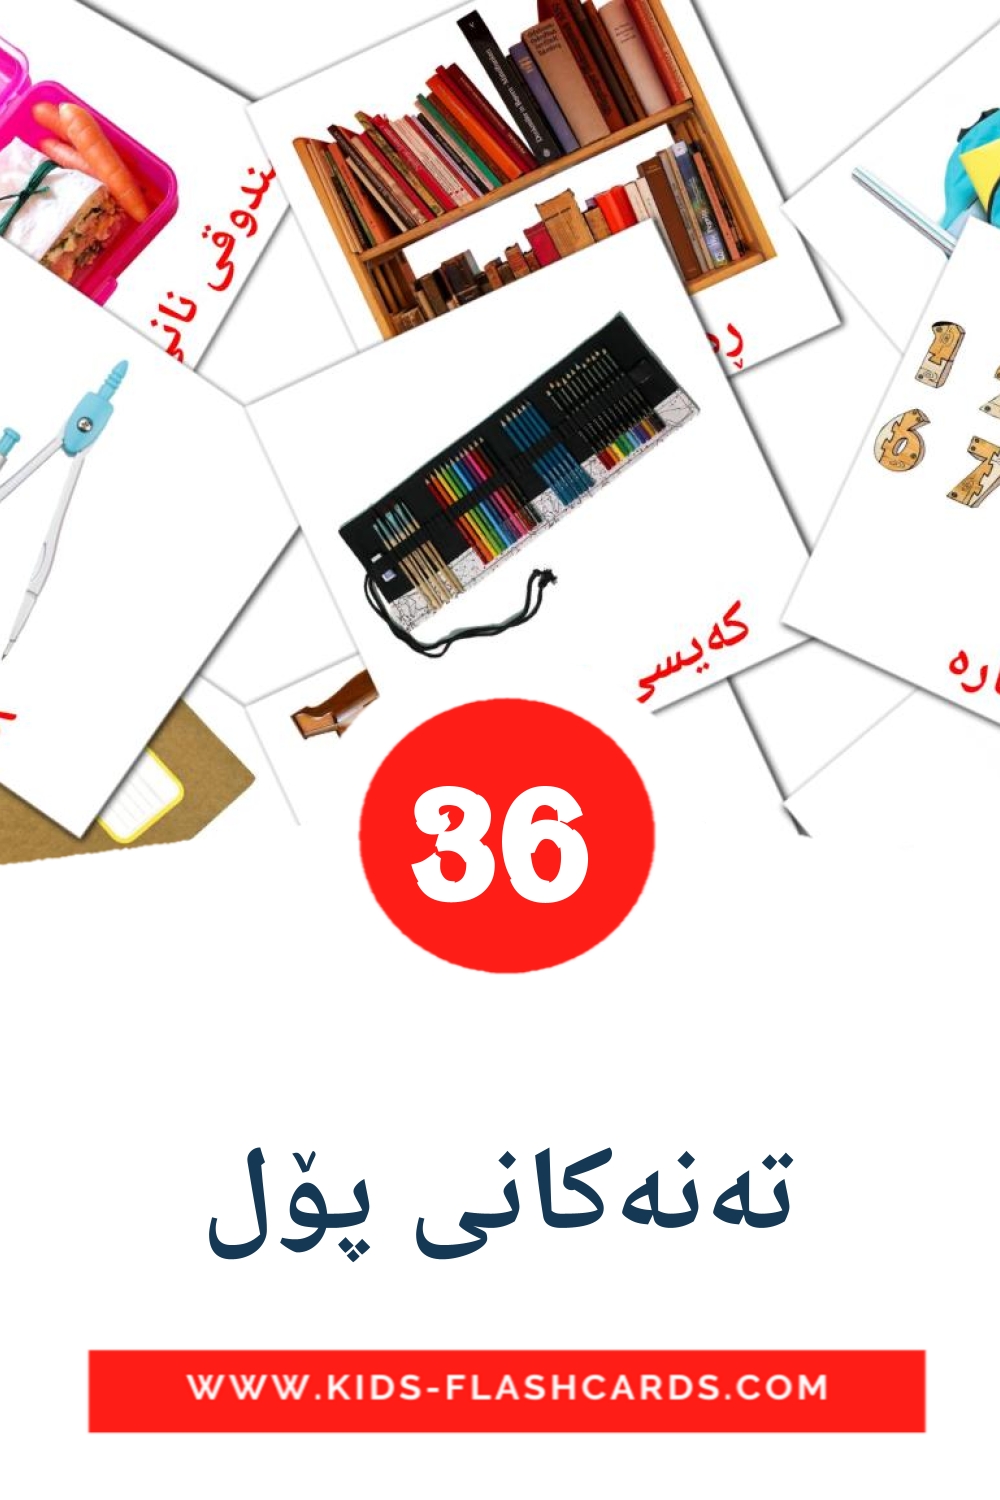 36 carte illustrate di تەنەکانی پۆل per la scuola materna in kurdish(sorani)